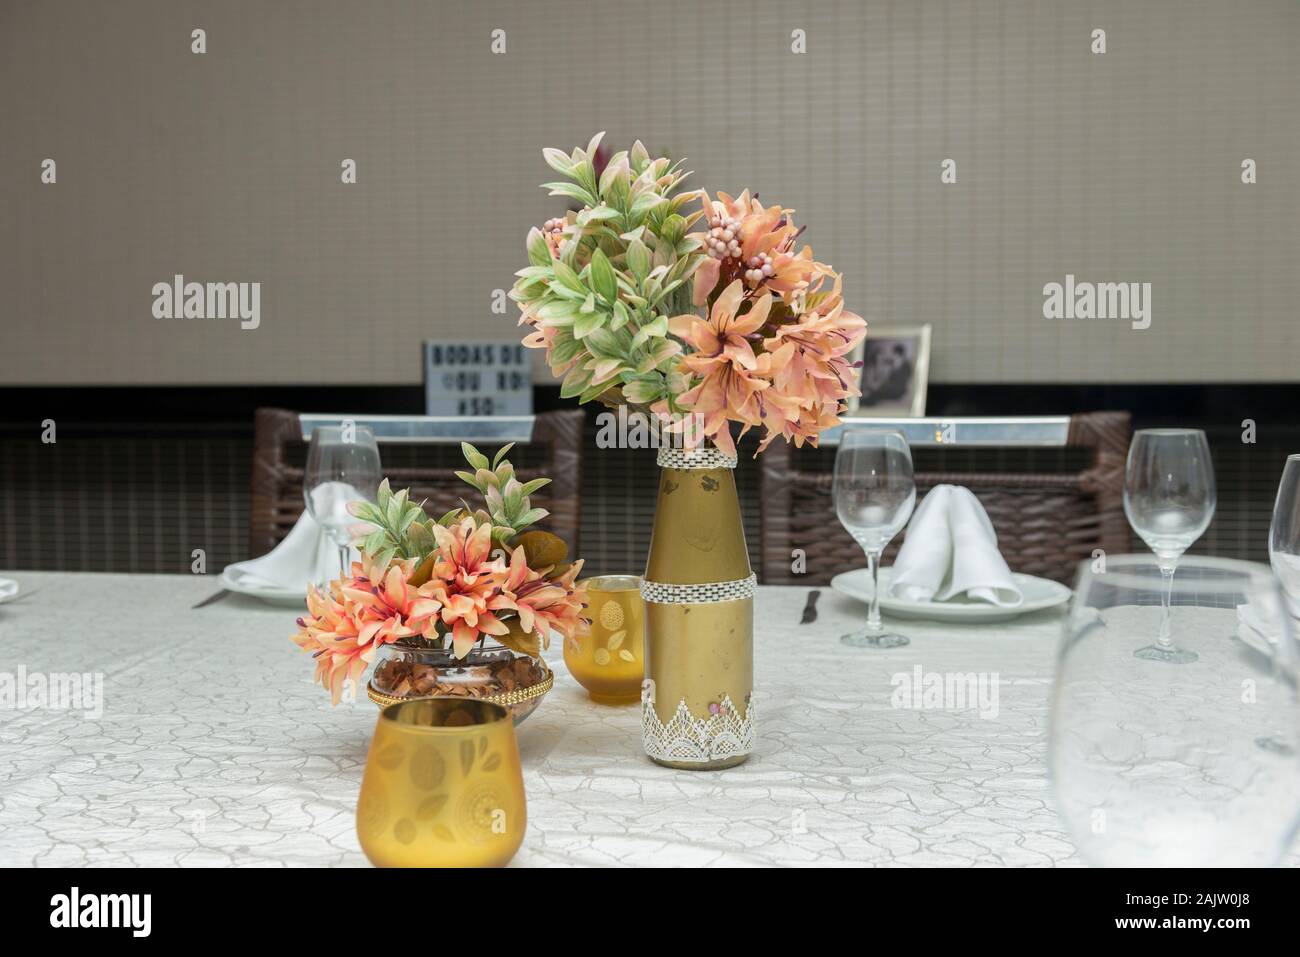 Flores decorativas en hermoso jarrón sobre una mesa de comedor junto a una vela. Decoración sencilla de aniversario de boda. Área de texto. Copie el espacio foc selectiva Foto de stock